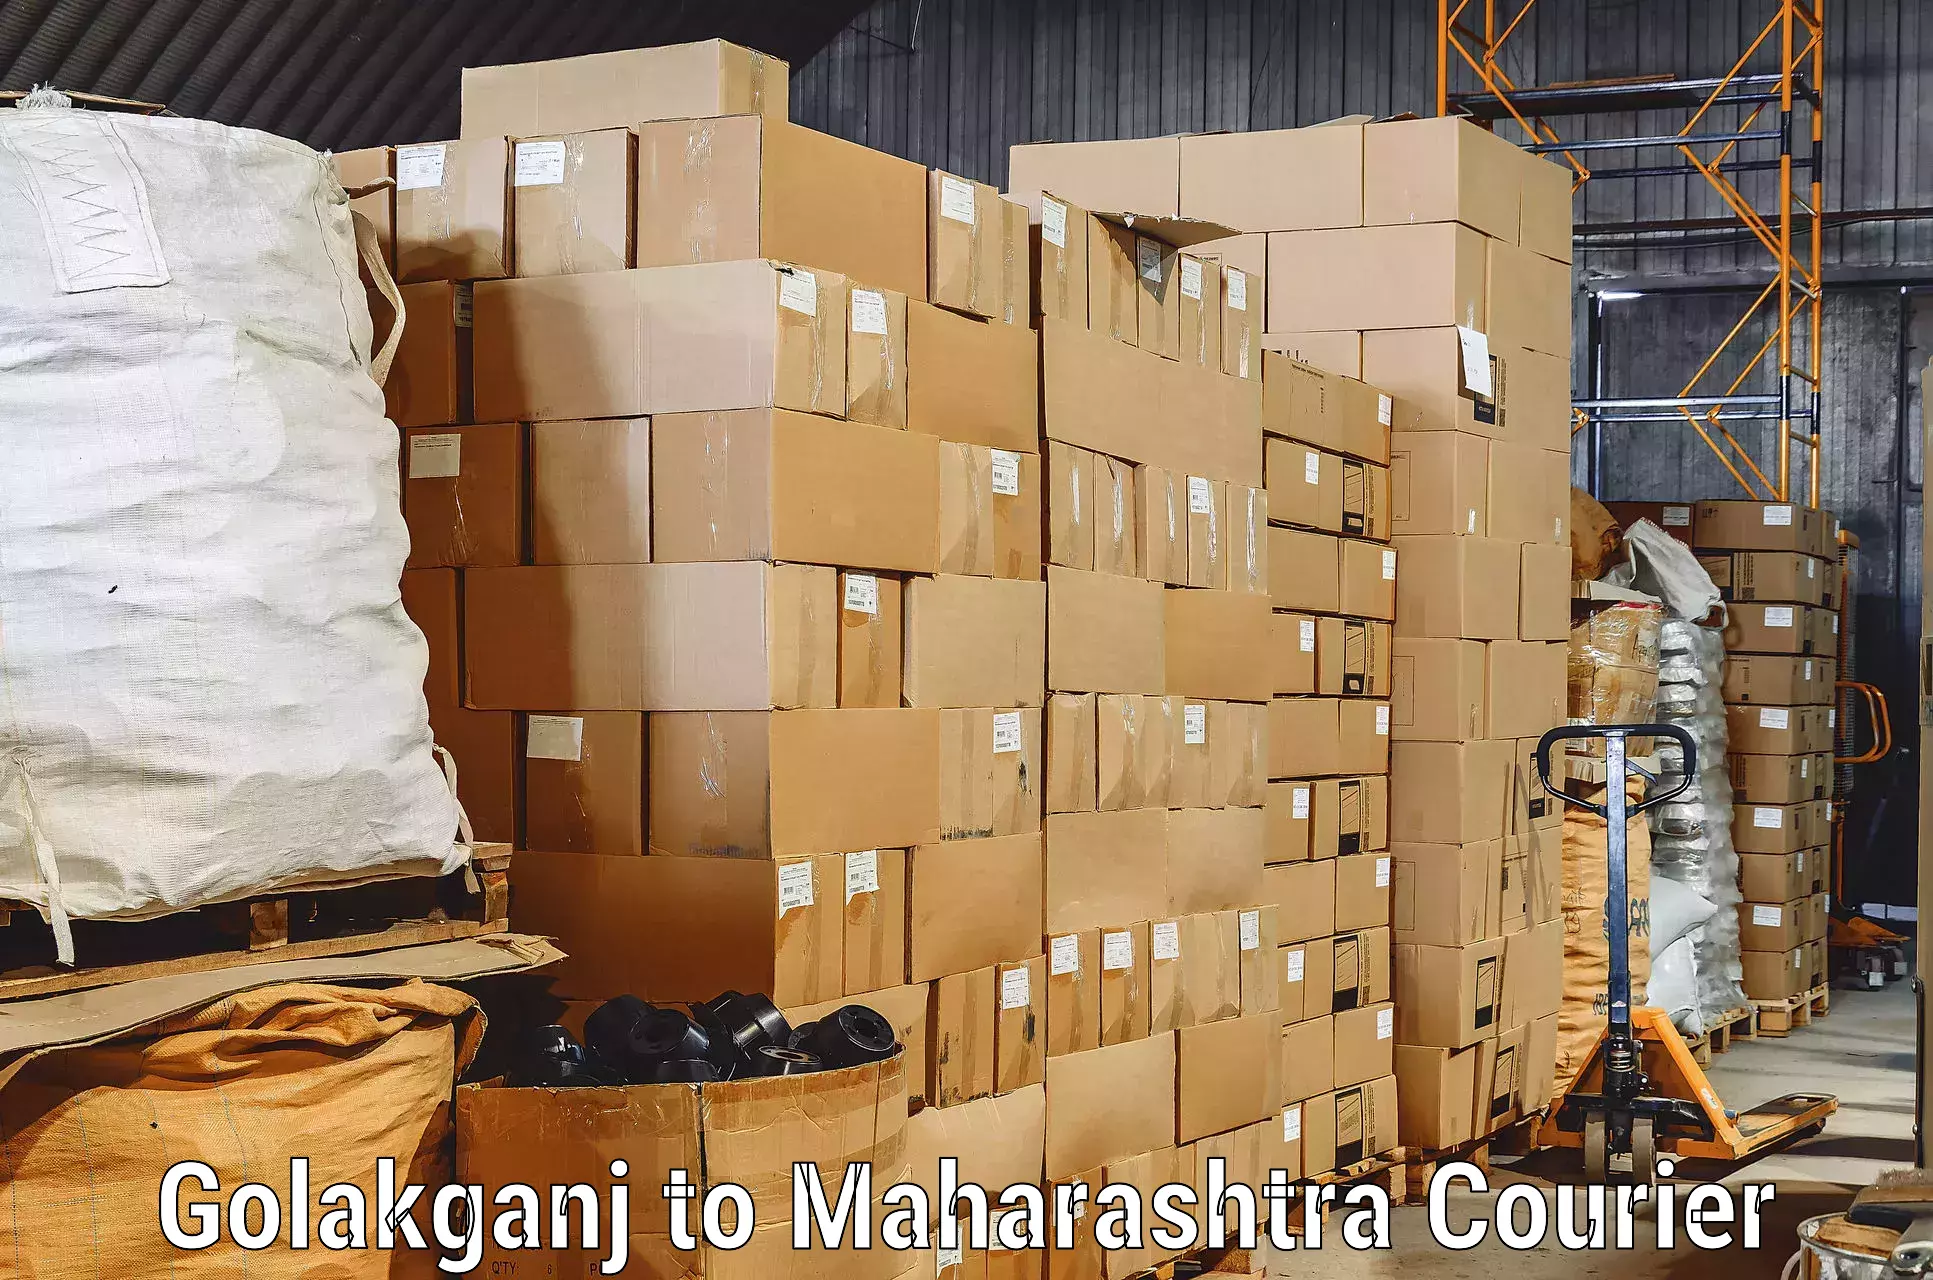 Reliable furniture transport Golakganj to Kopargaon